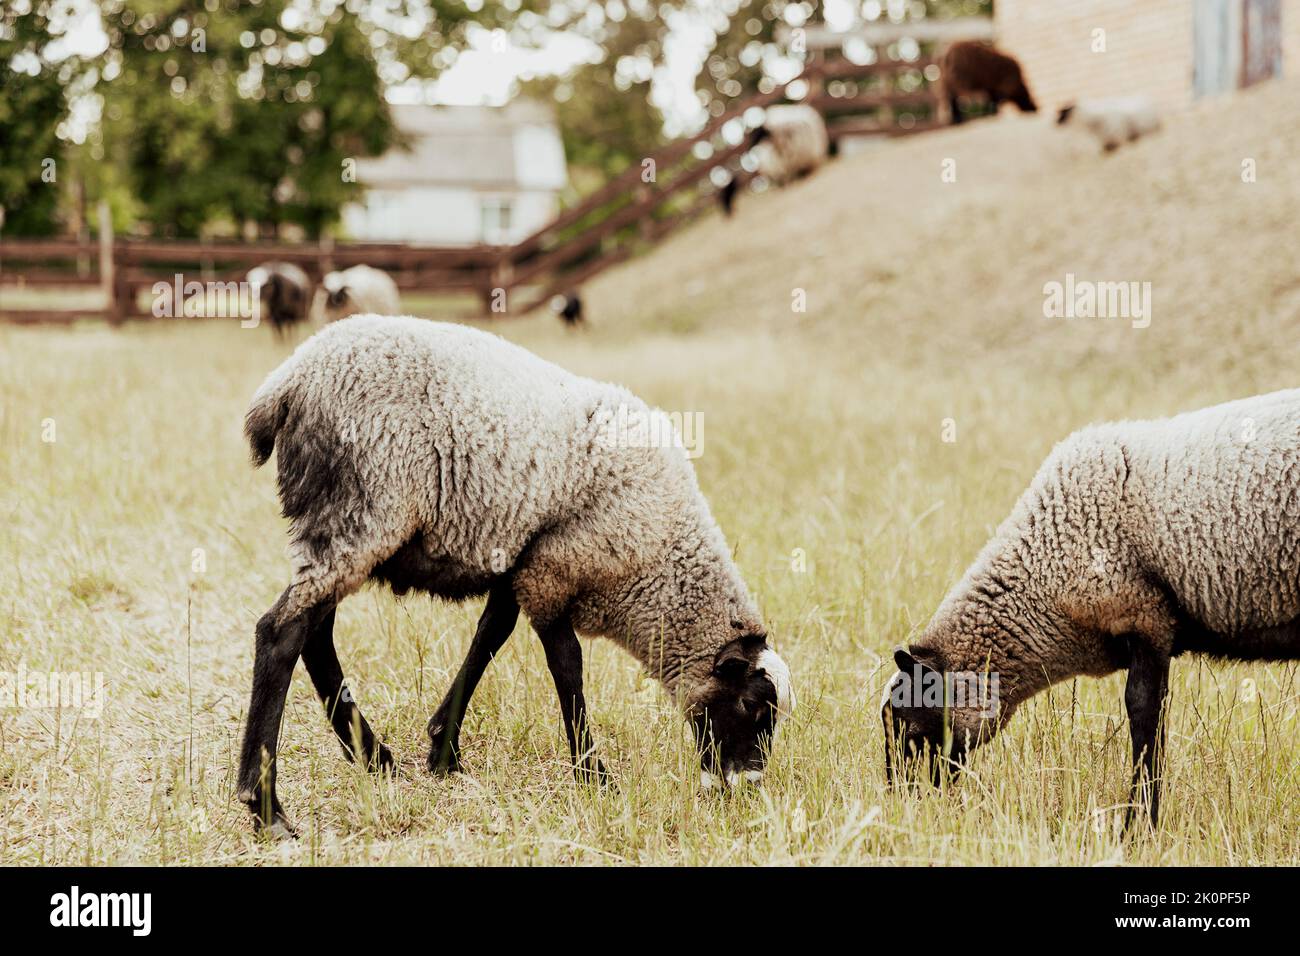 Gruppo di due animali domestici della pecora britannica Suffolk in fattoria in fienile di legno su un pascolo nel campo che mangia erba gialla sul terreno. Pecora bianco-nera. Foto di alta qualità Foto Stock